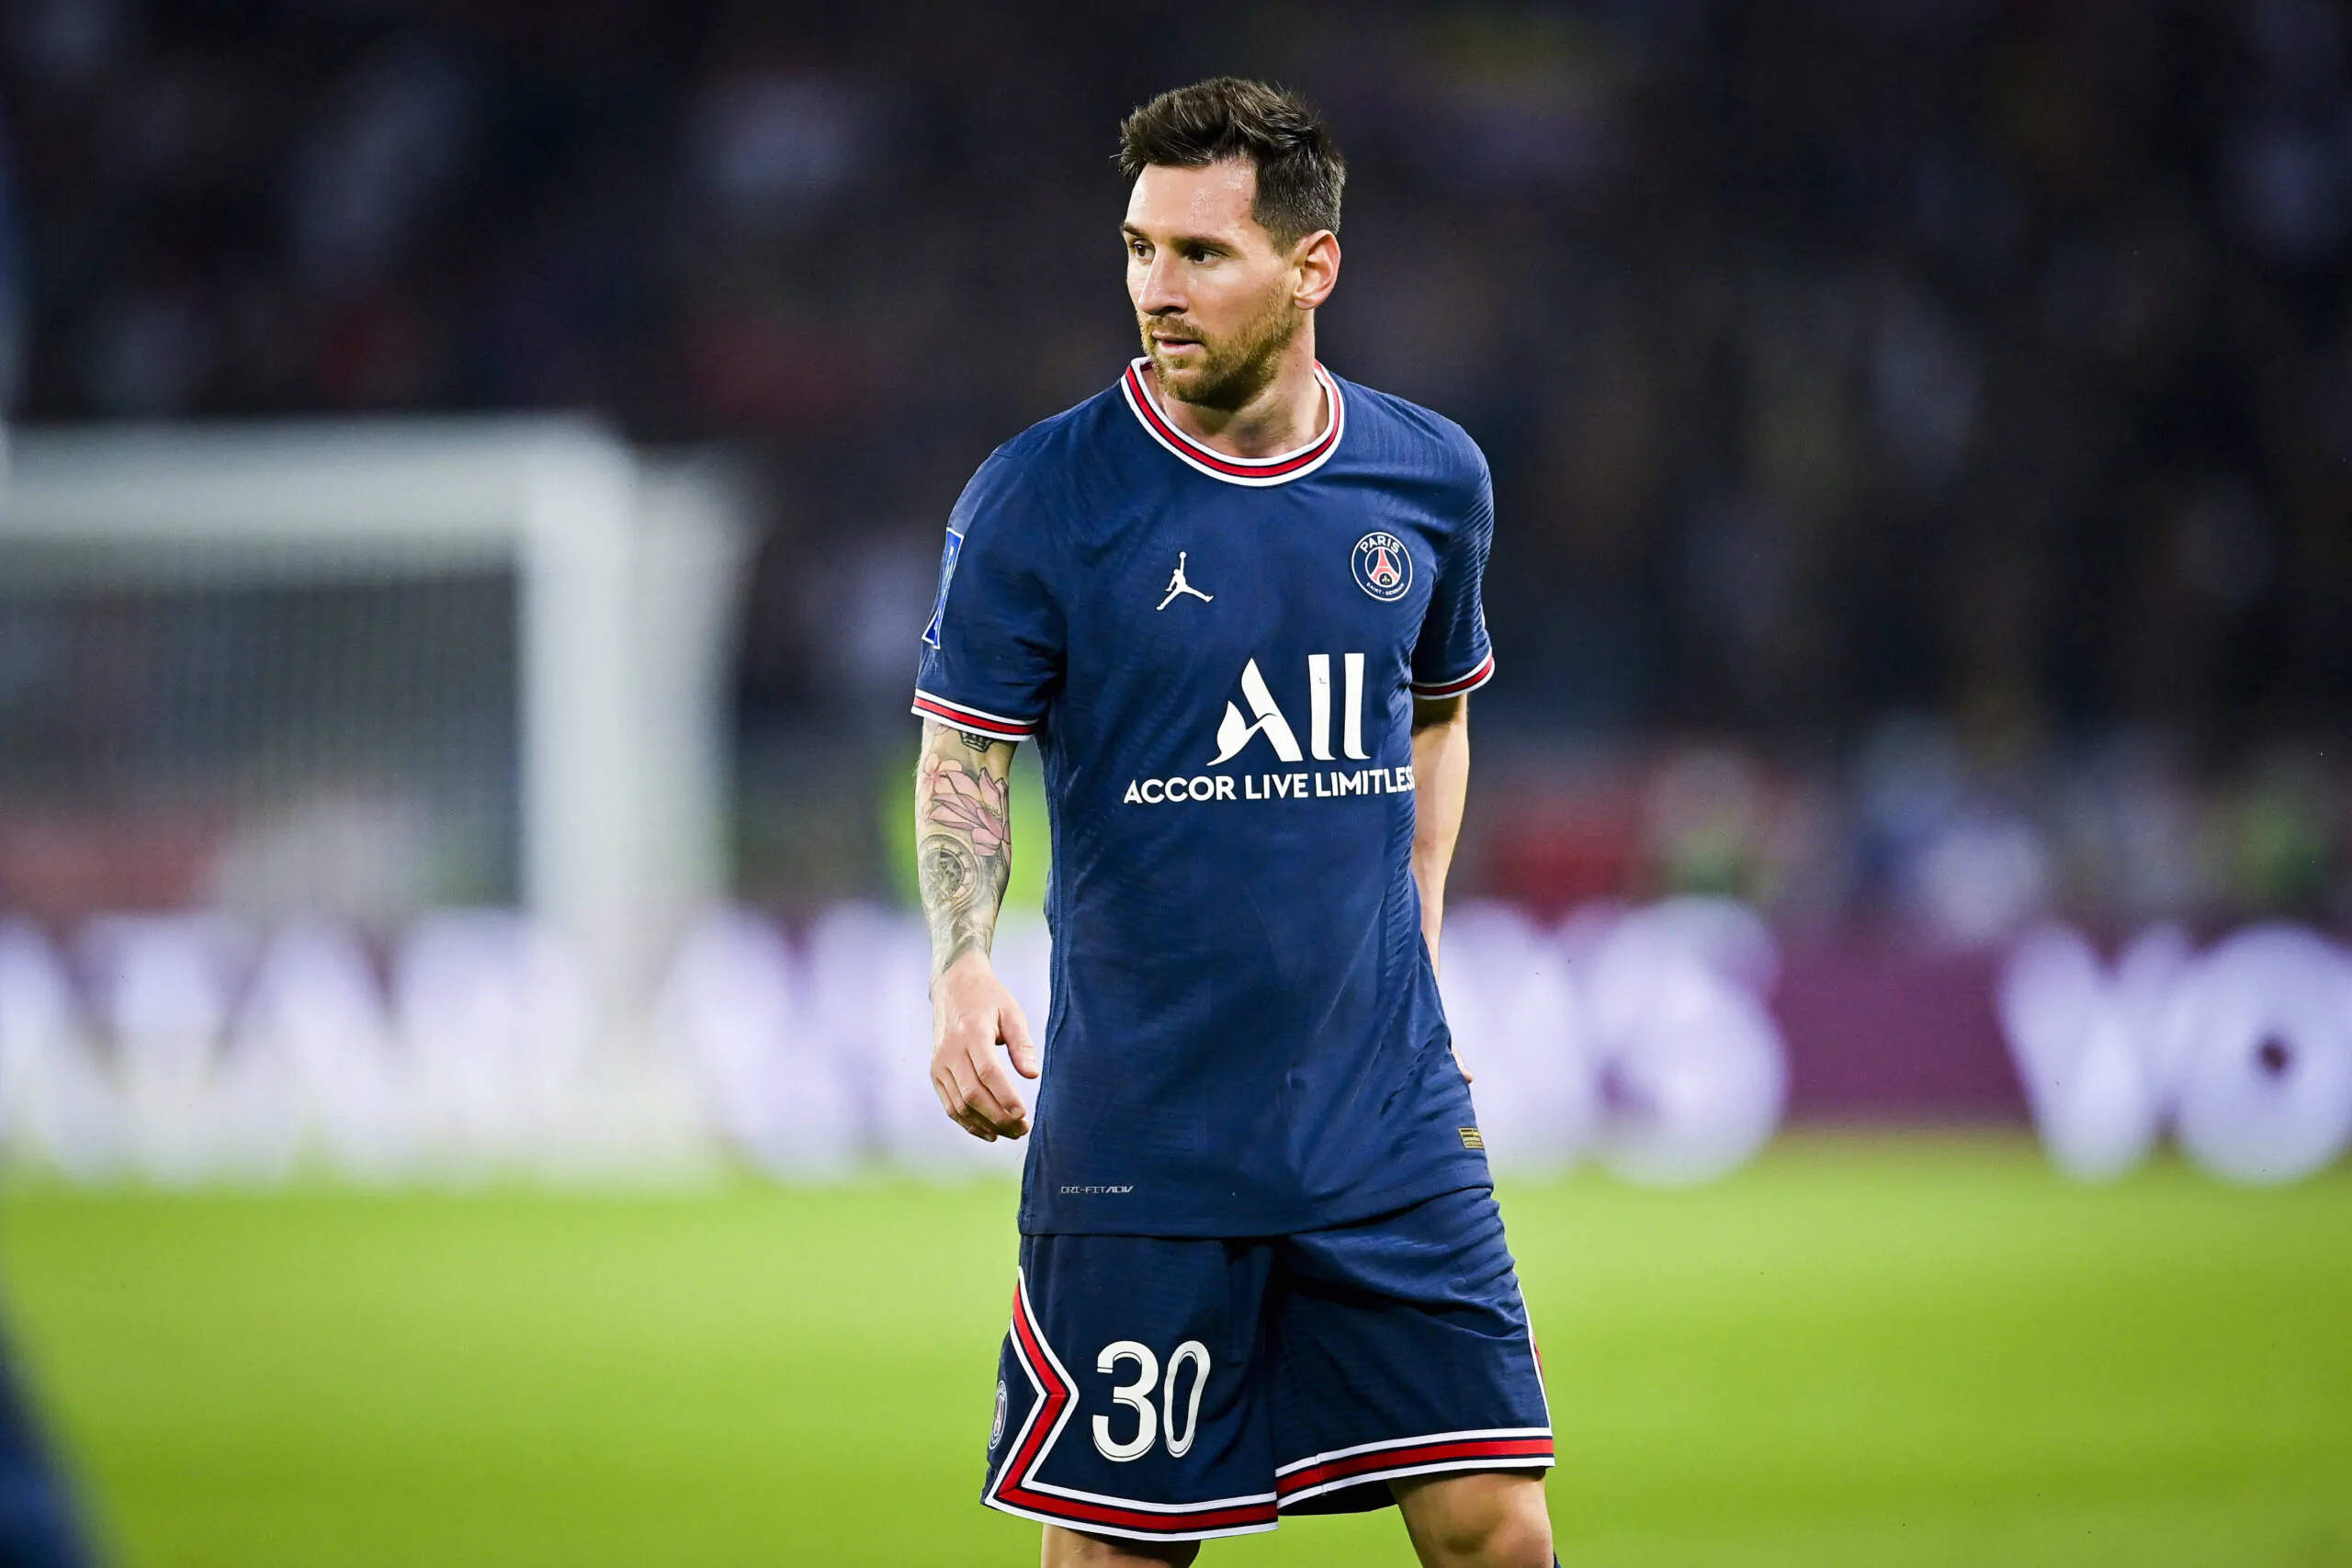 “Messi passerà alla storia come il giocatore più forte di sempre”, le parole dell’ex campione